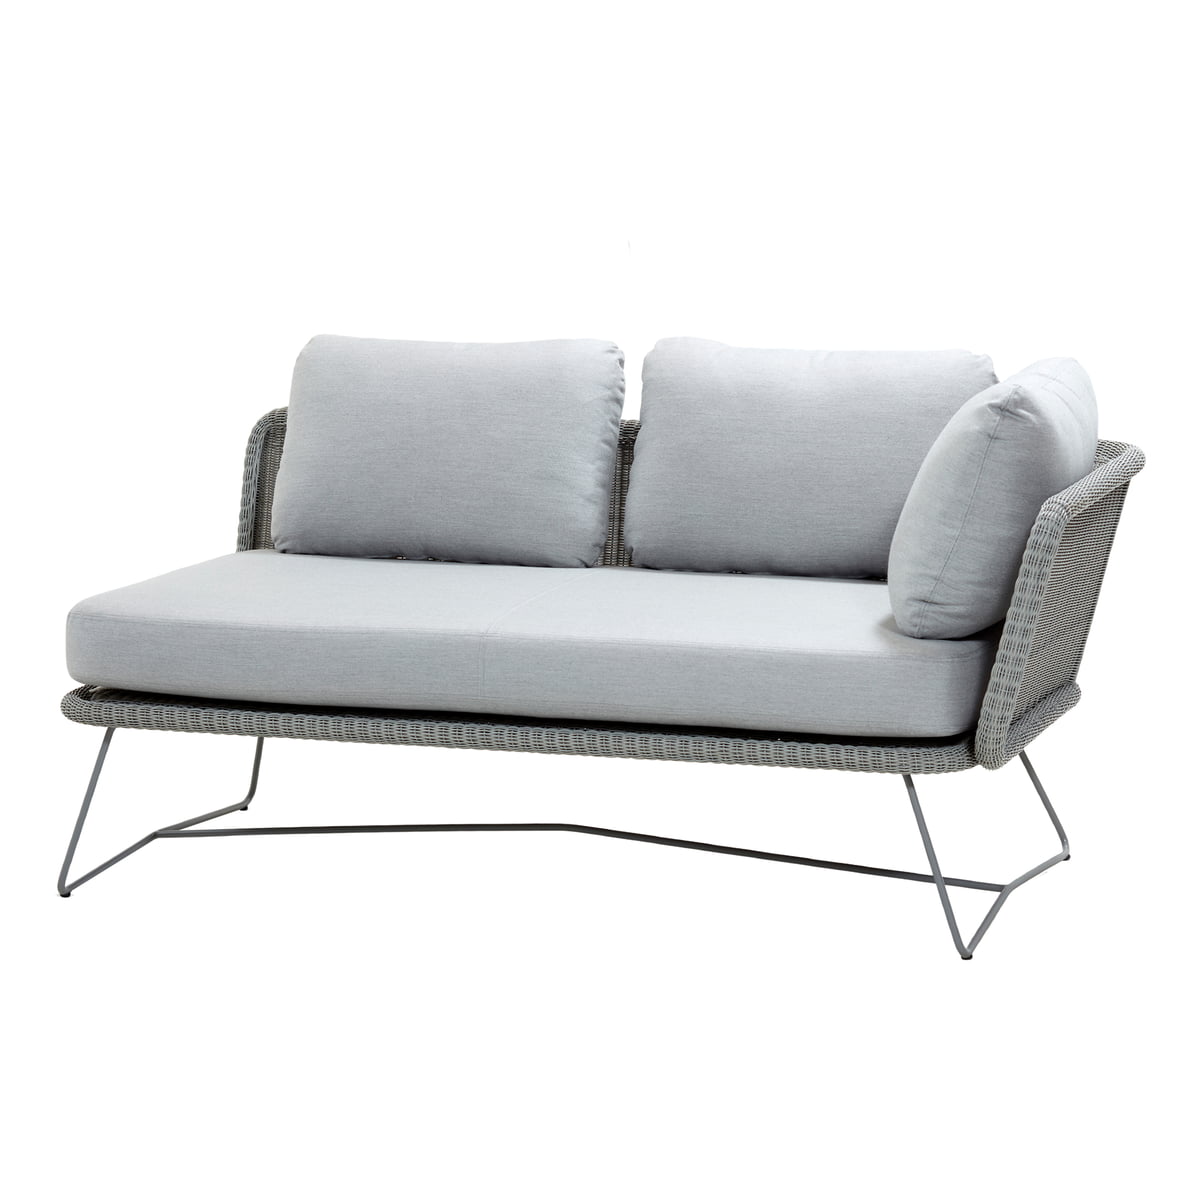 Cane-line - Horizon Module sofa Outdoor | Connox